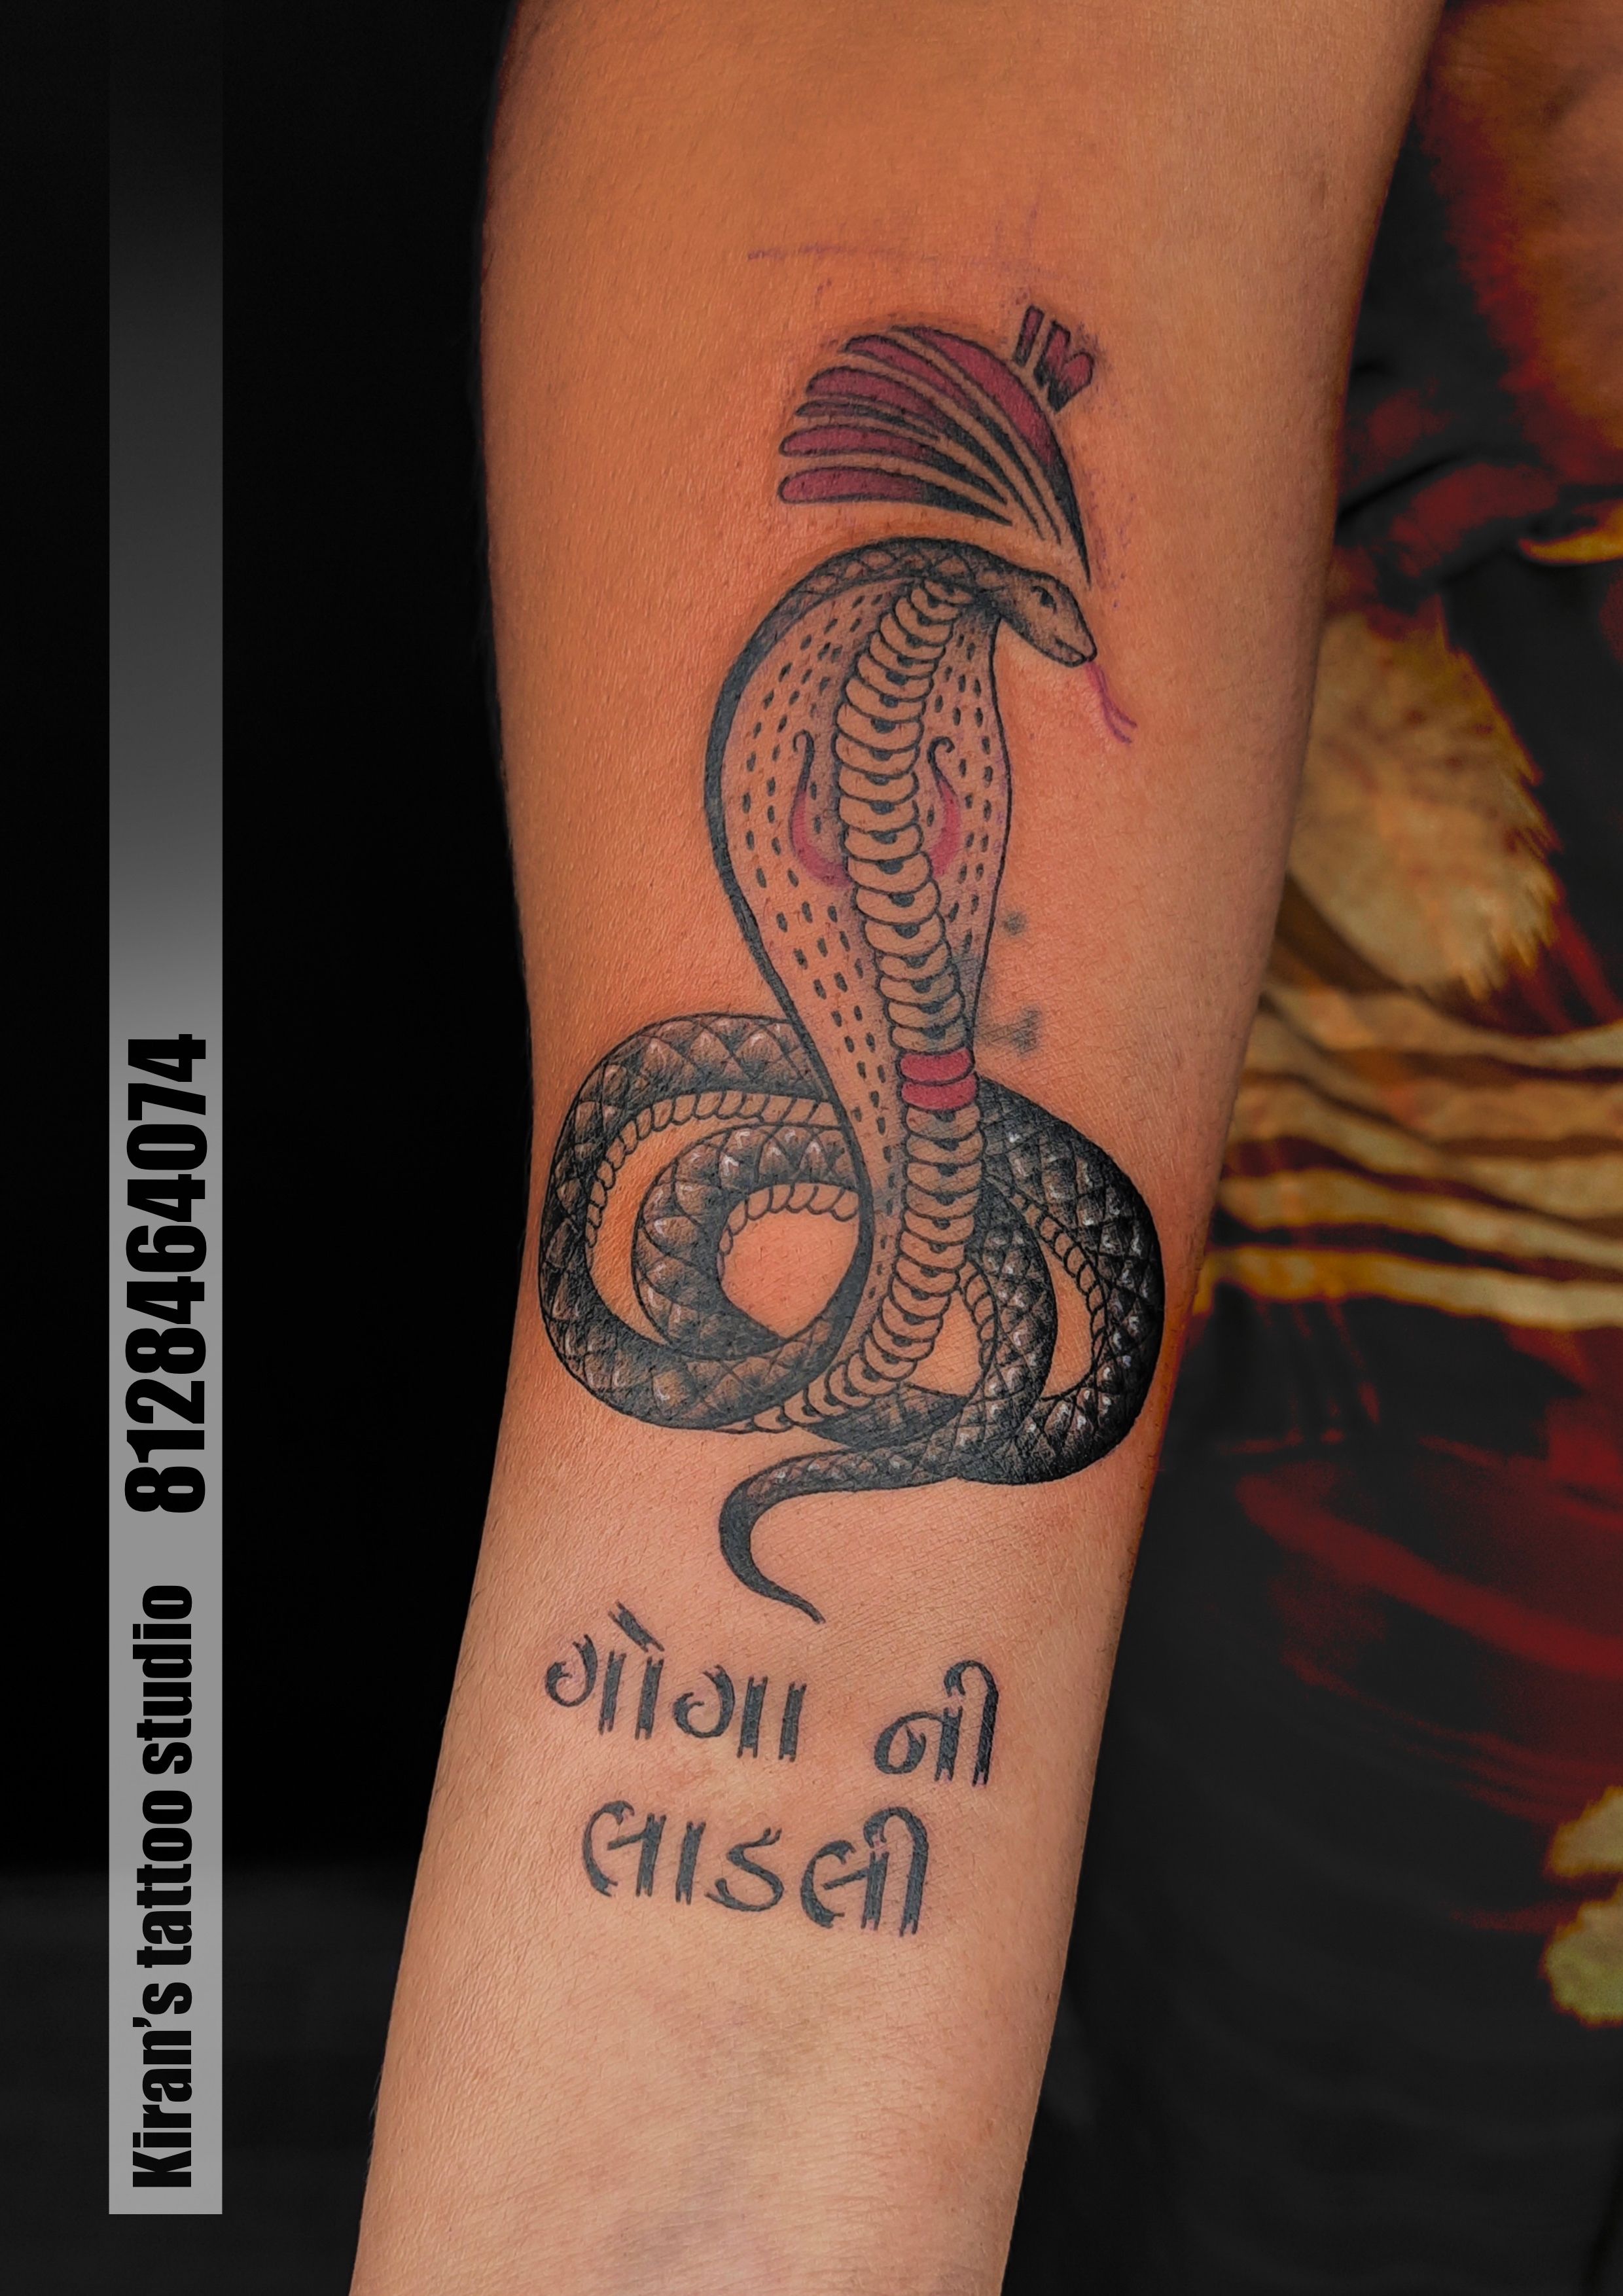 Goga Maharaj Tattoo | Tattoos, Band tattoo designs, Band tattoo